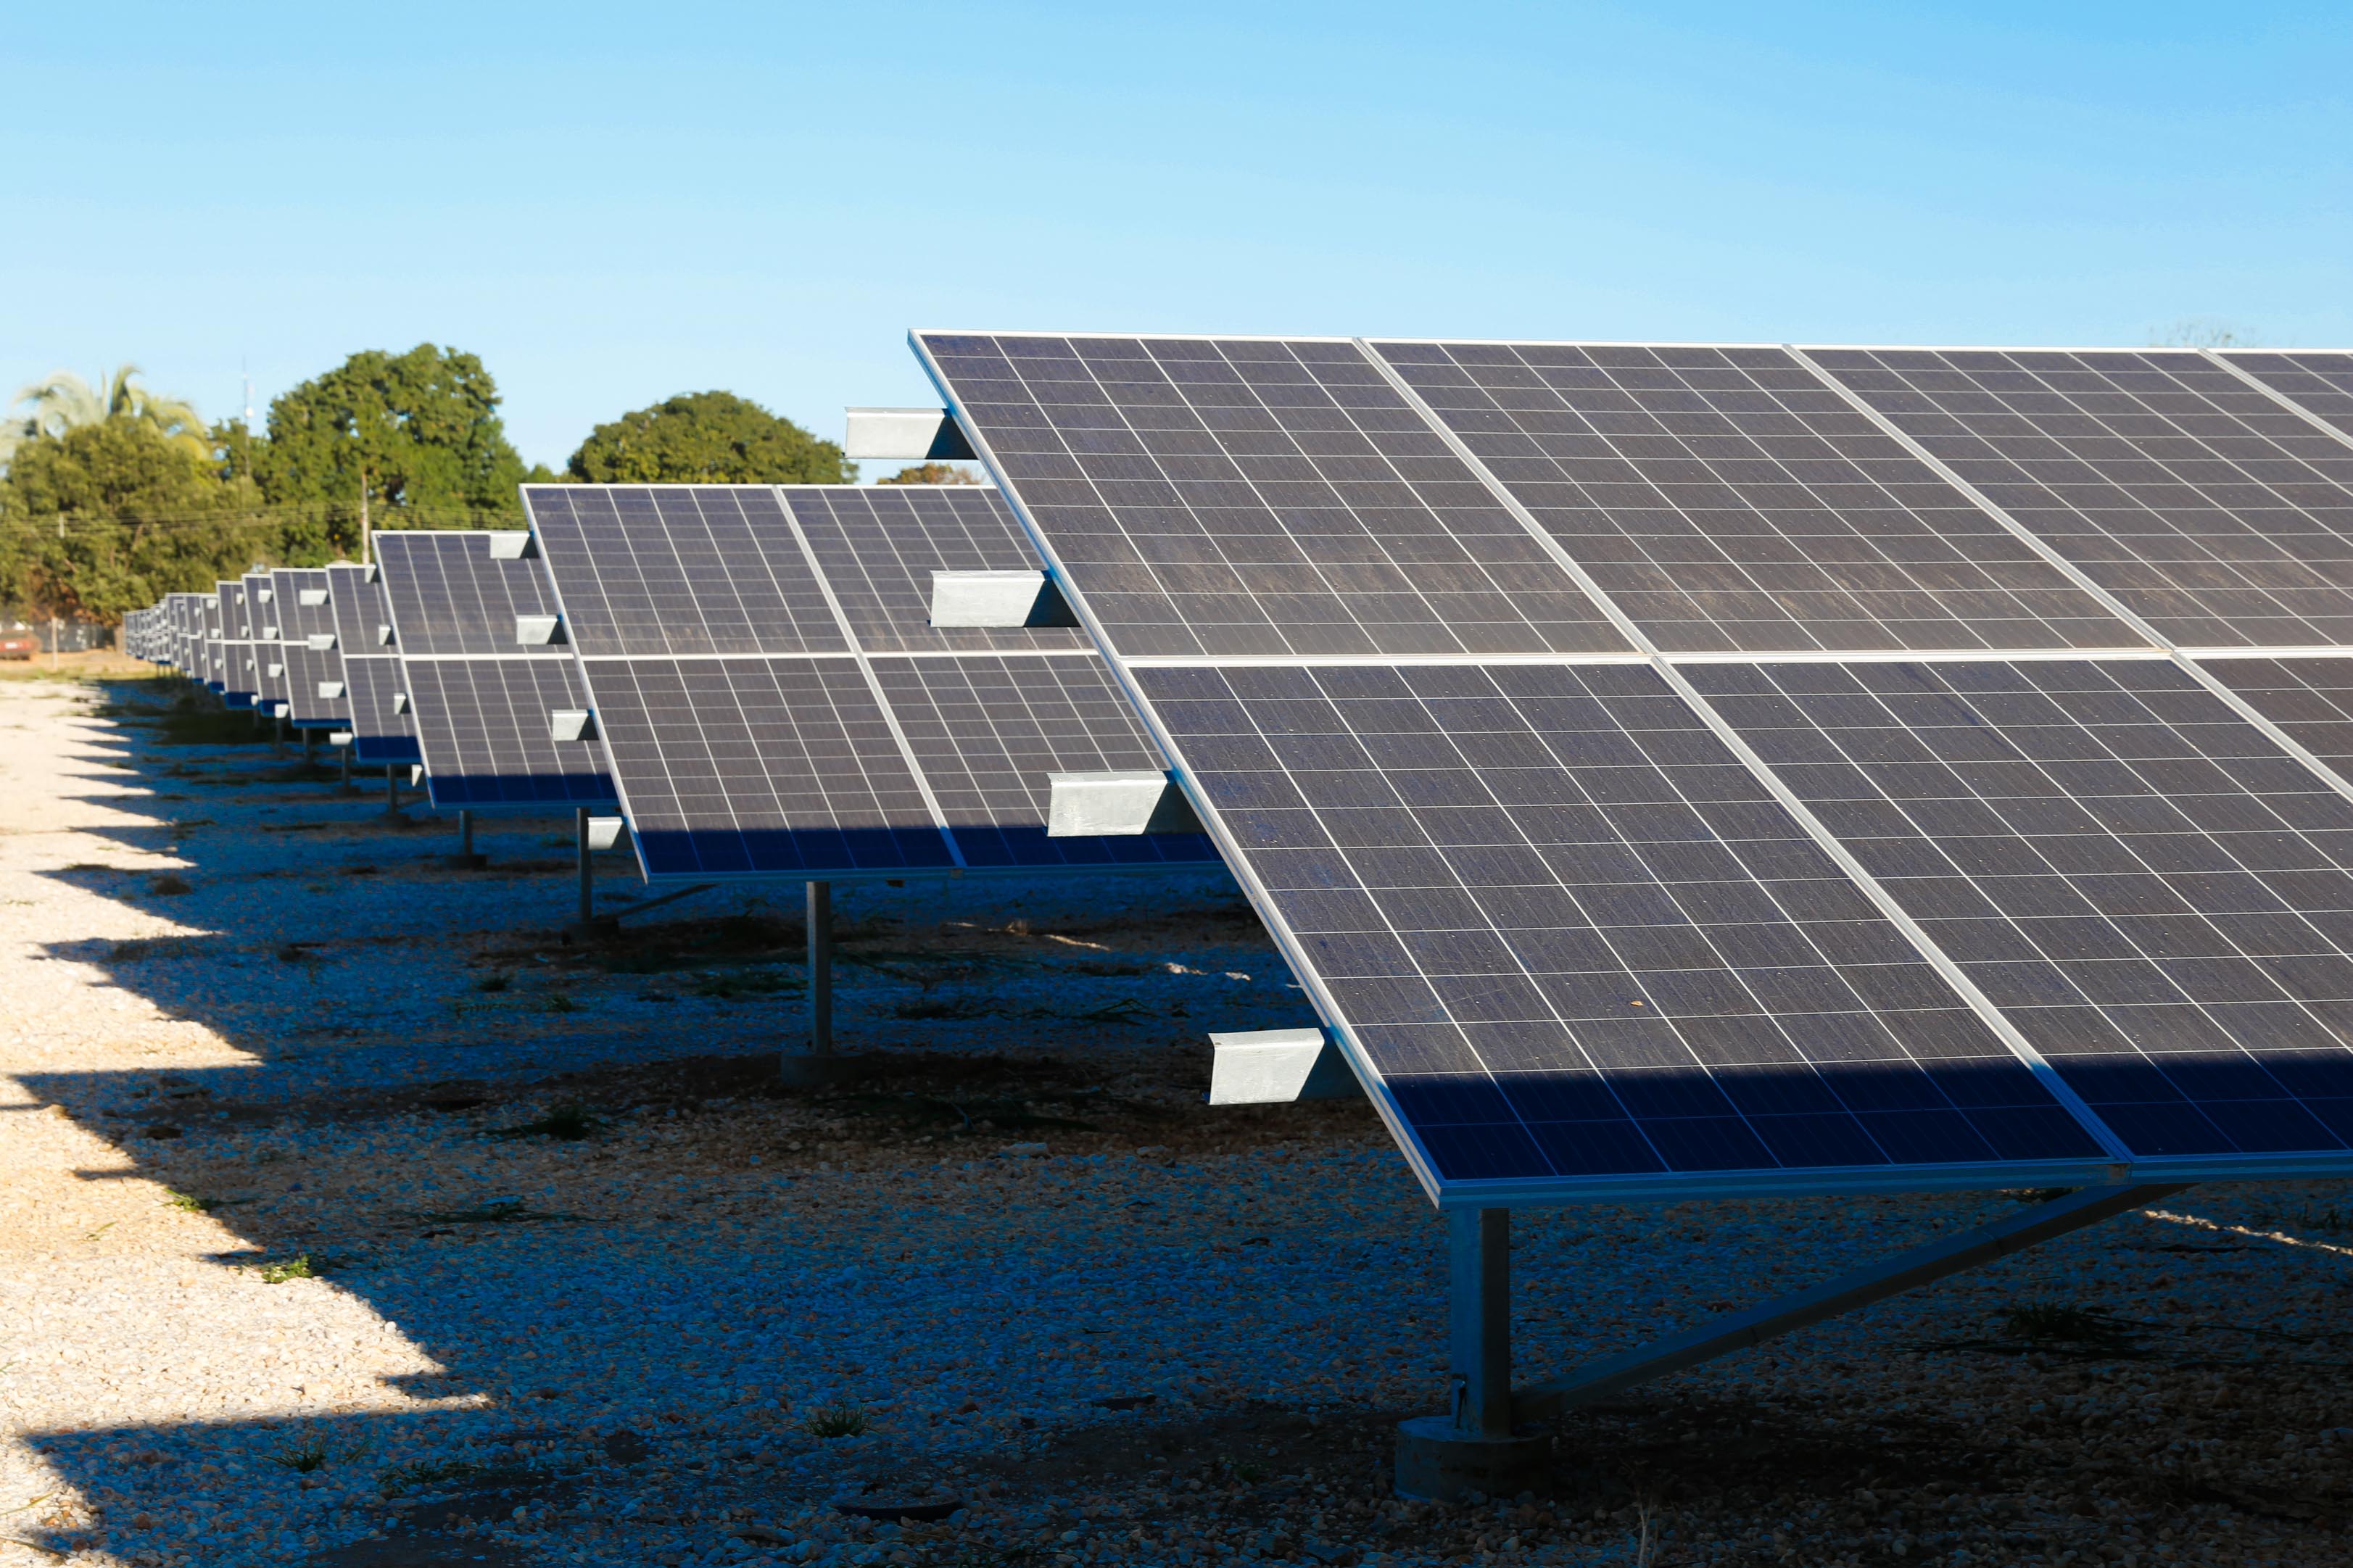 Minas se torna primeiro estado a bater a marca de 4 GW de geração solar centralizada em operação - Agência Minas Gerais